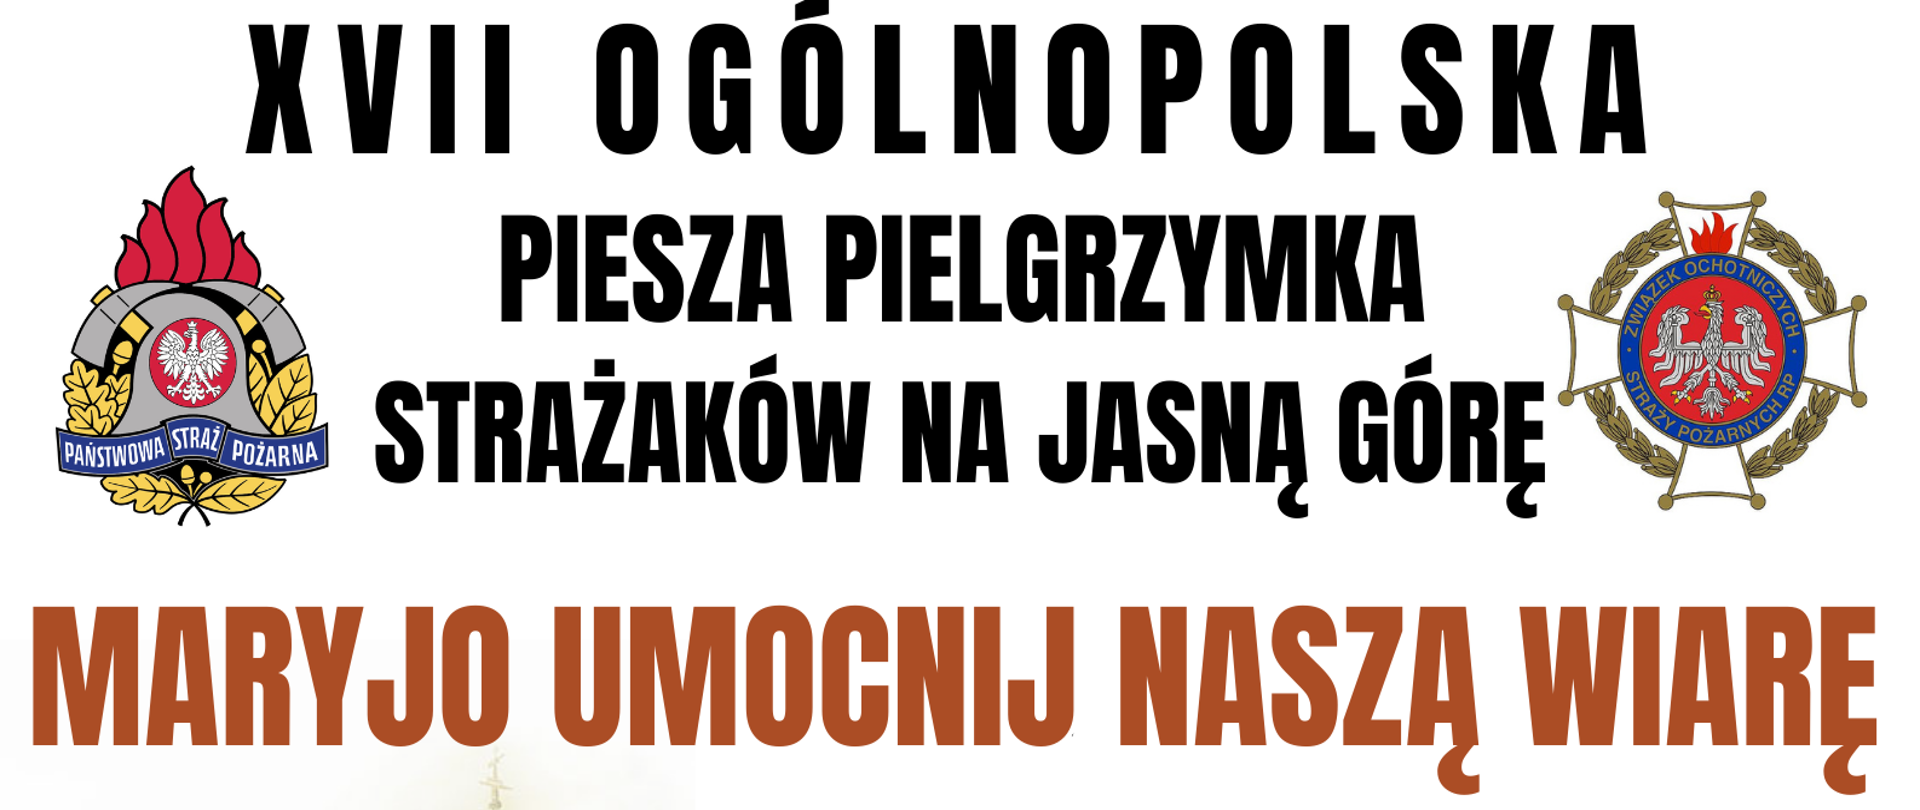 Plakat przedstawia informacje dot. XII ogólnopolskiej pieszej pielgrzymce strażaków na Jasną Górę.